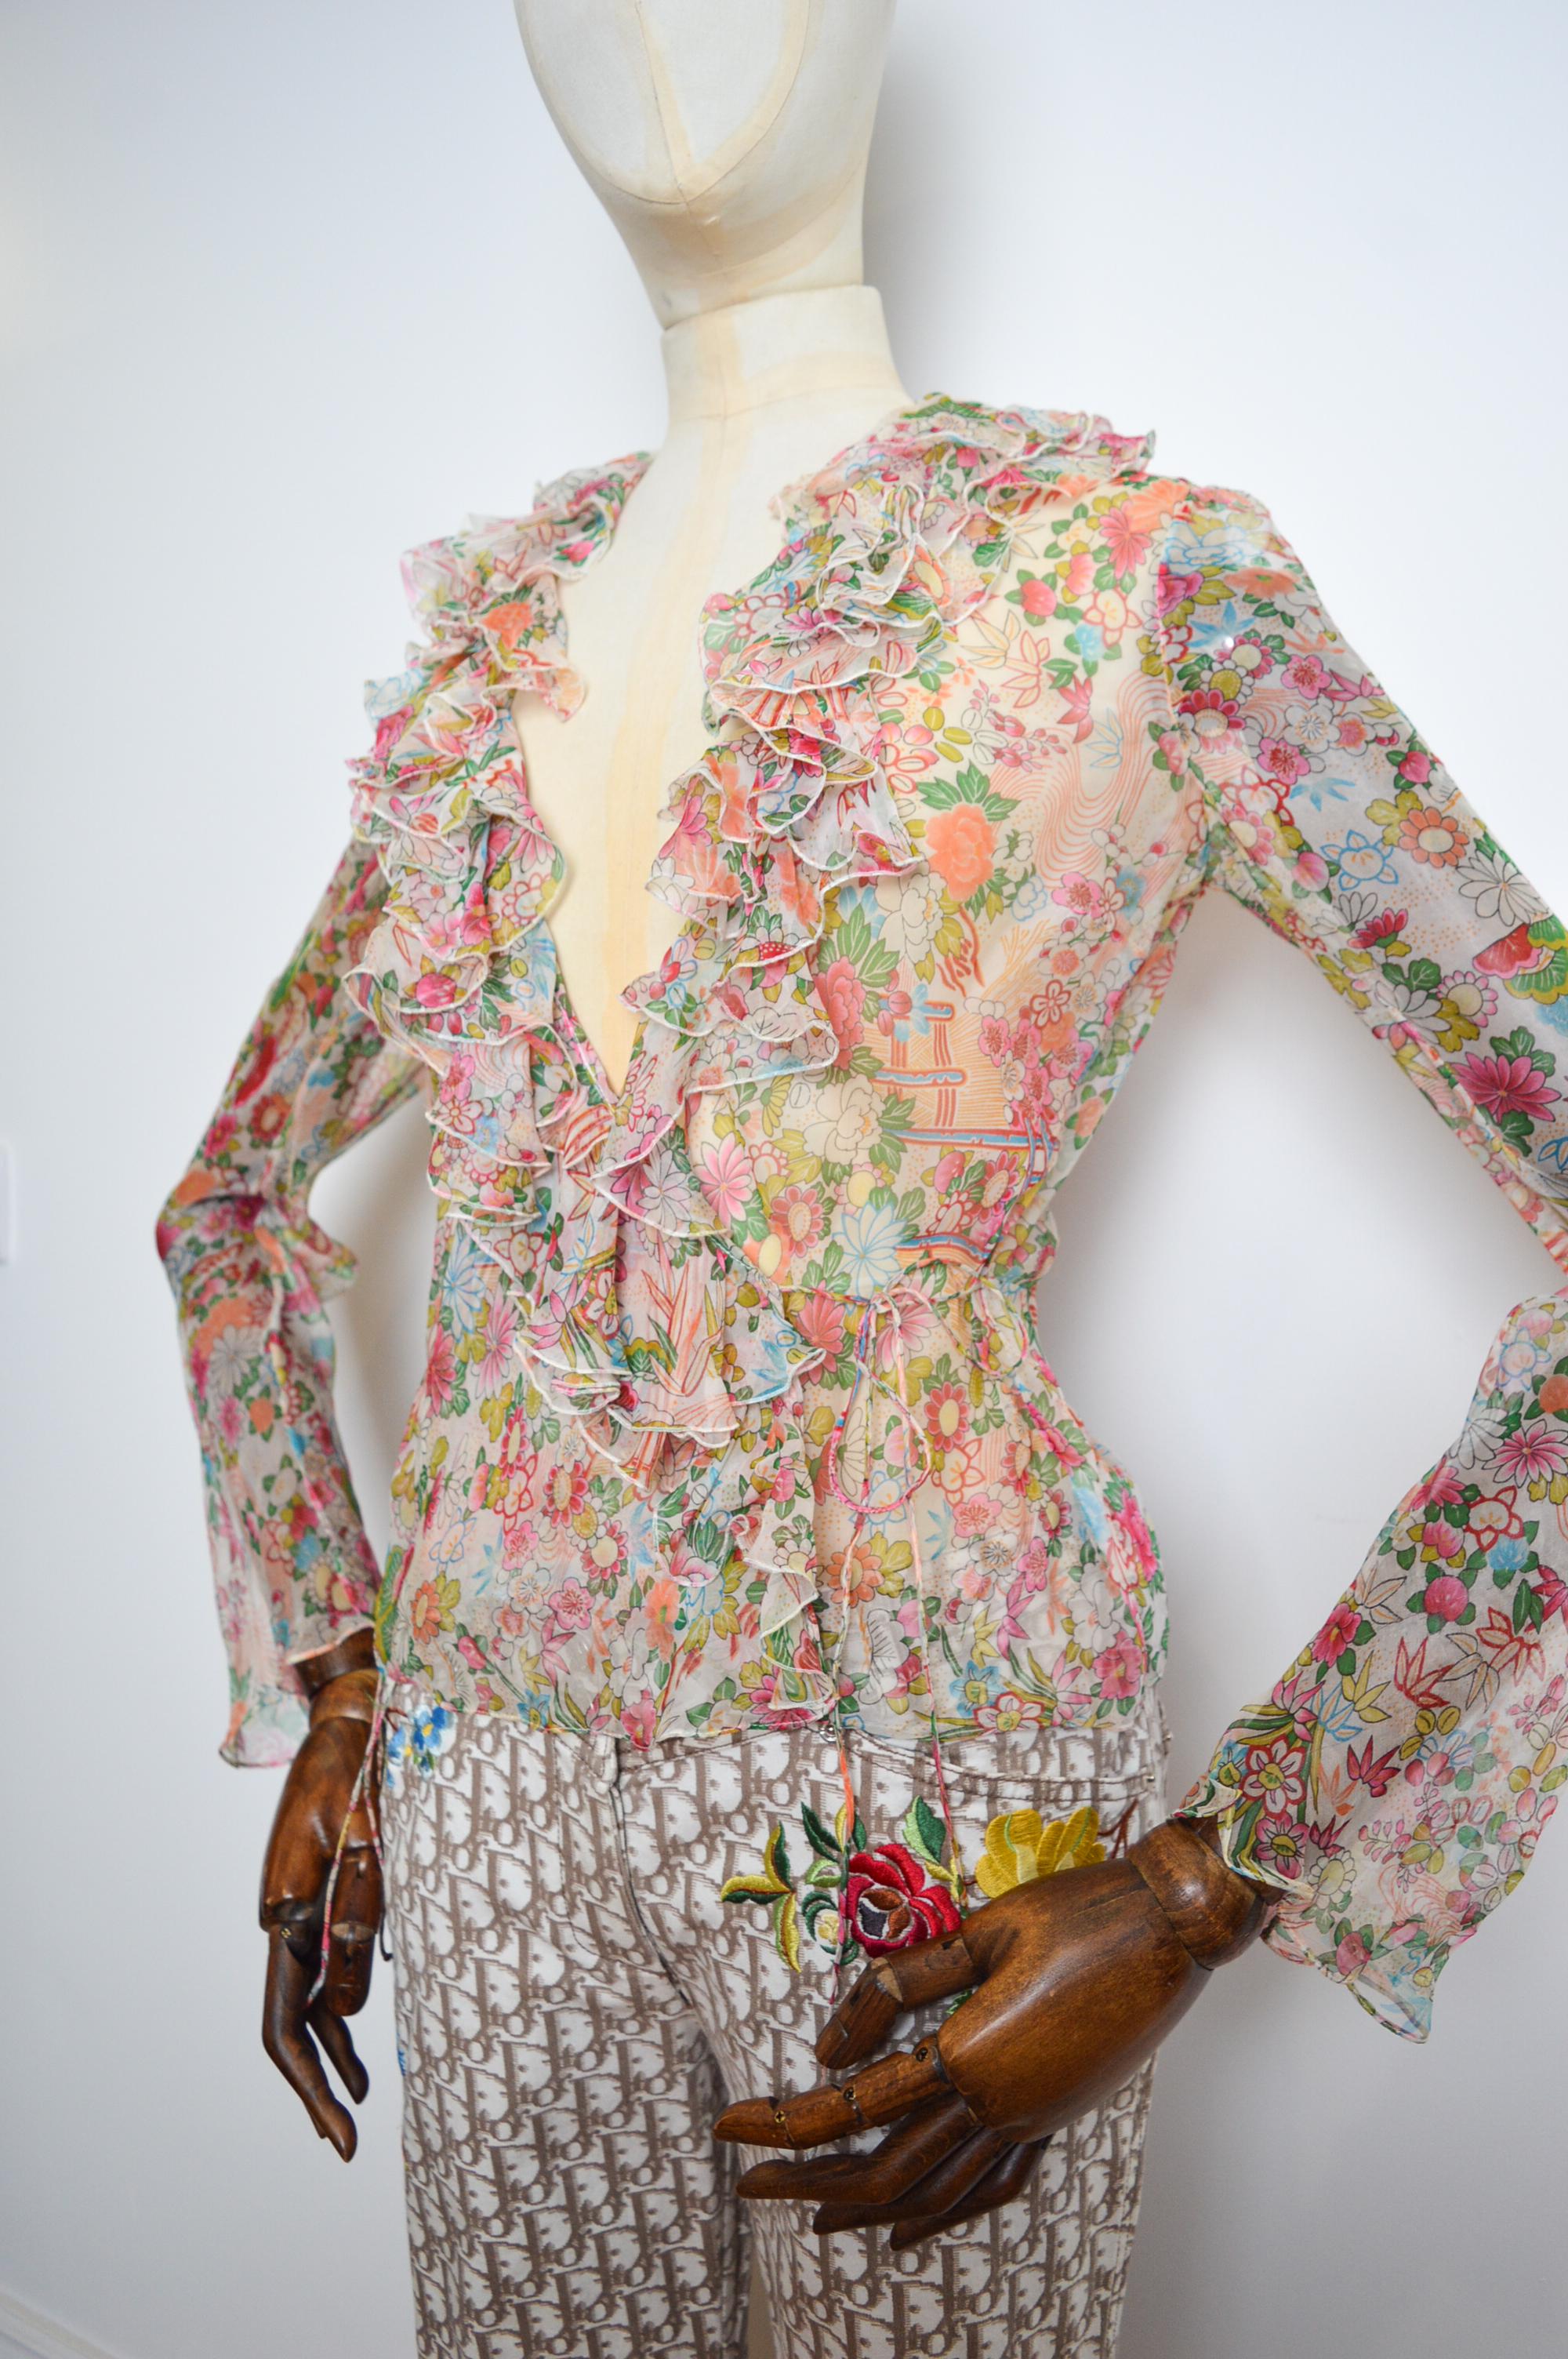 Magnifique et délicate blouse en mousseline, printemps/été 2002, de John Galliano pour Christian Dior. 

Imprimé de fleurs de cerisier. 

100% soie

FABRIQUÉ EN FRANCE.

Mesures en pouces - 
D'une fosse à l'autre -17